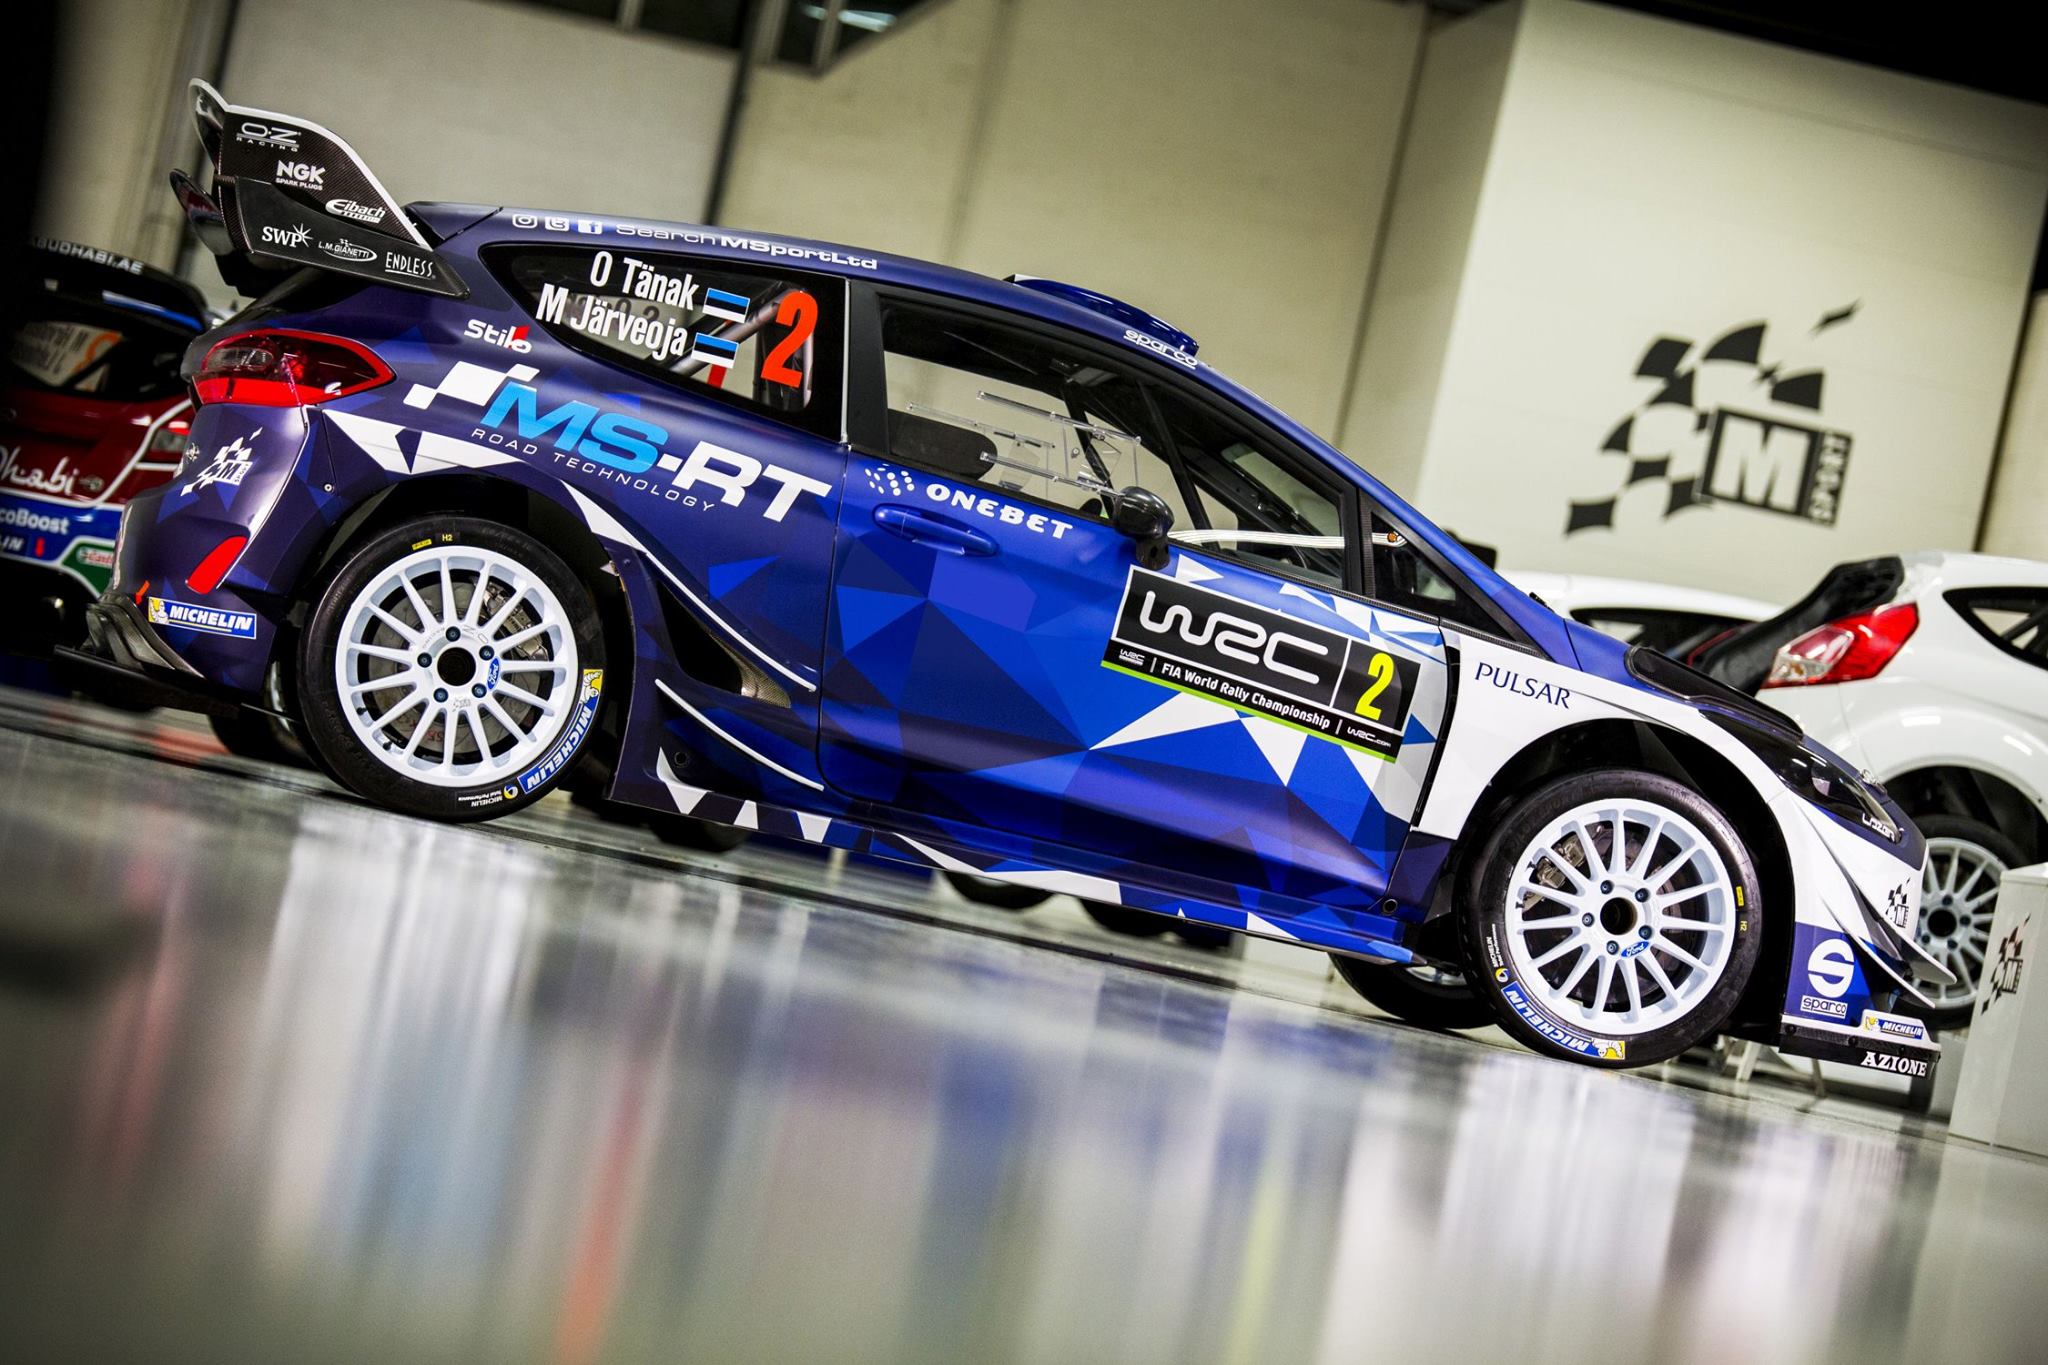 Ford Fiesta WRC 2017 - Ott Tänak